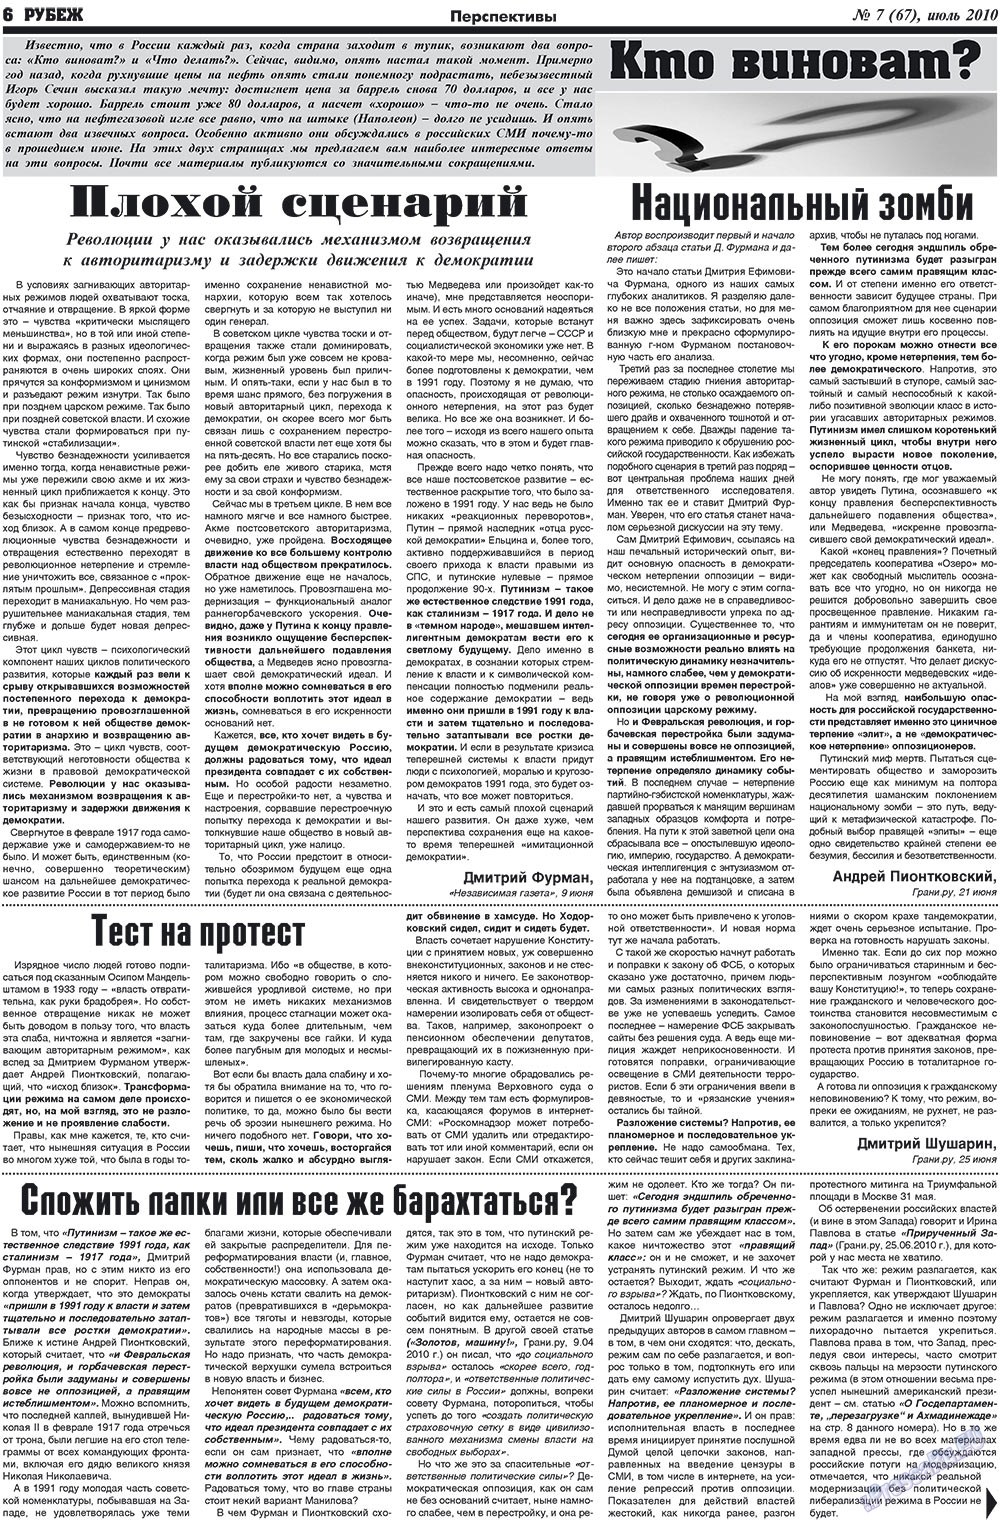 Рубеж (газета). 2010 год, номер 7, стр. 6